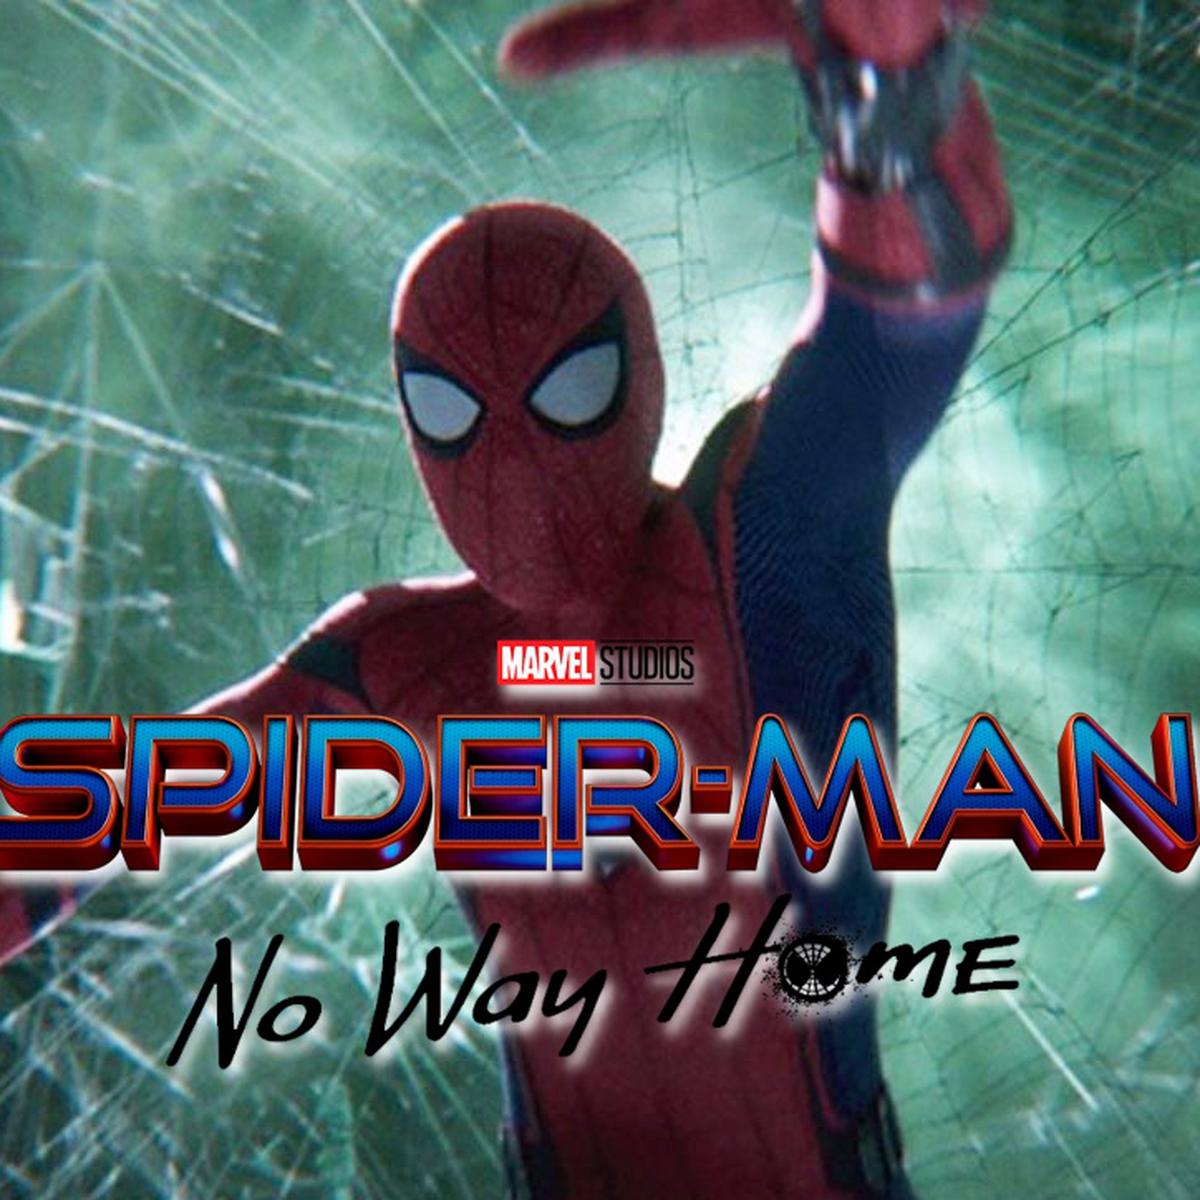 SPIDERMAN 3 | Spiderman: No Way Home: reacciones en redes y última hora del  tráiler oficial | Marvel Studios | Sony | Vía Disney Plus | Sony Pictures  Italia | LUCES | EL COMERCIO PERÚ